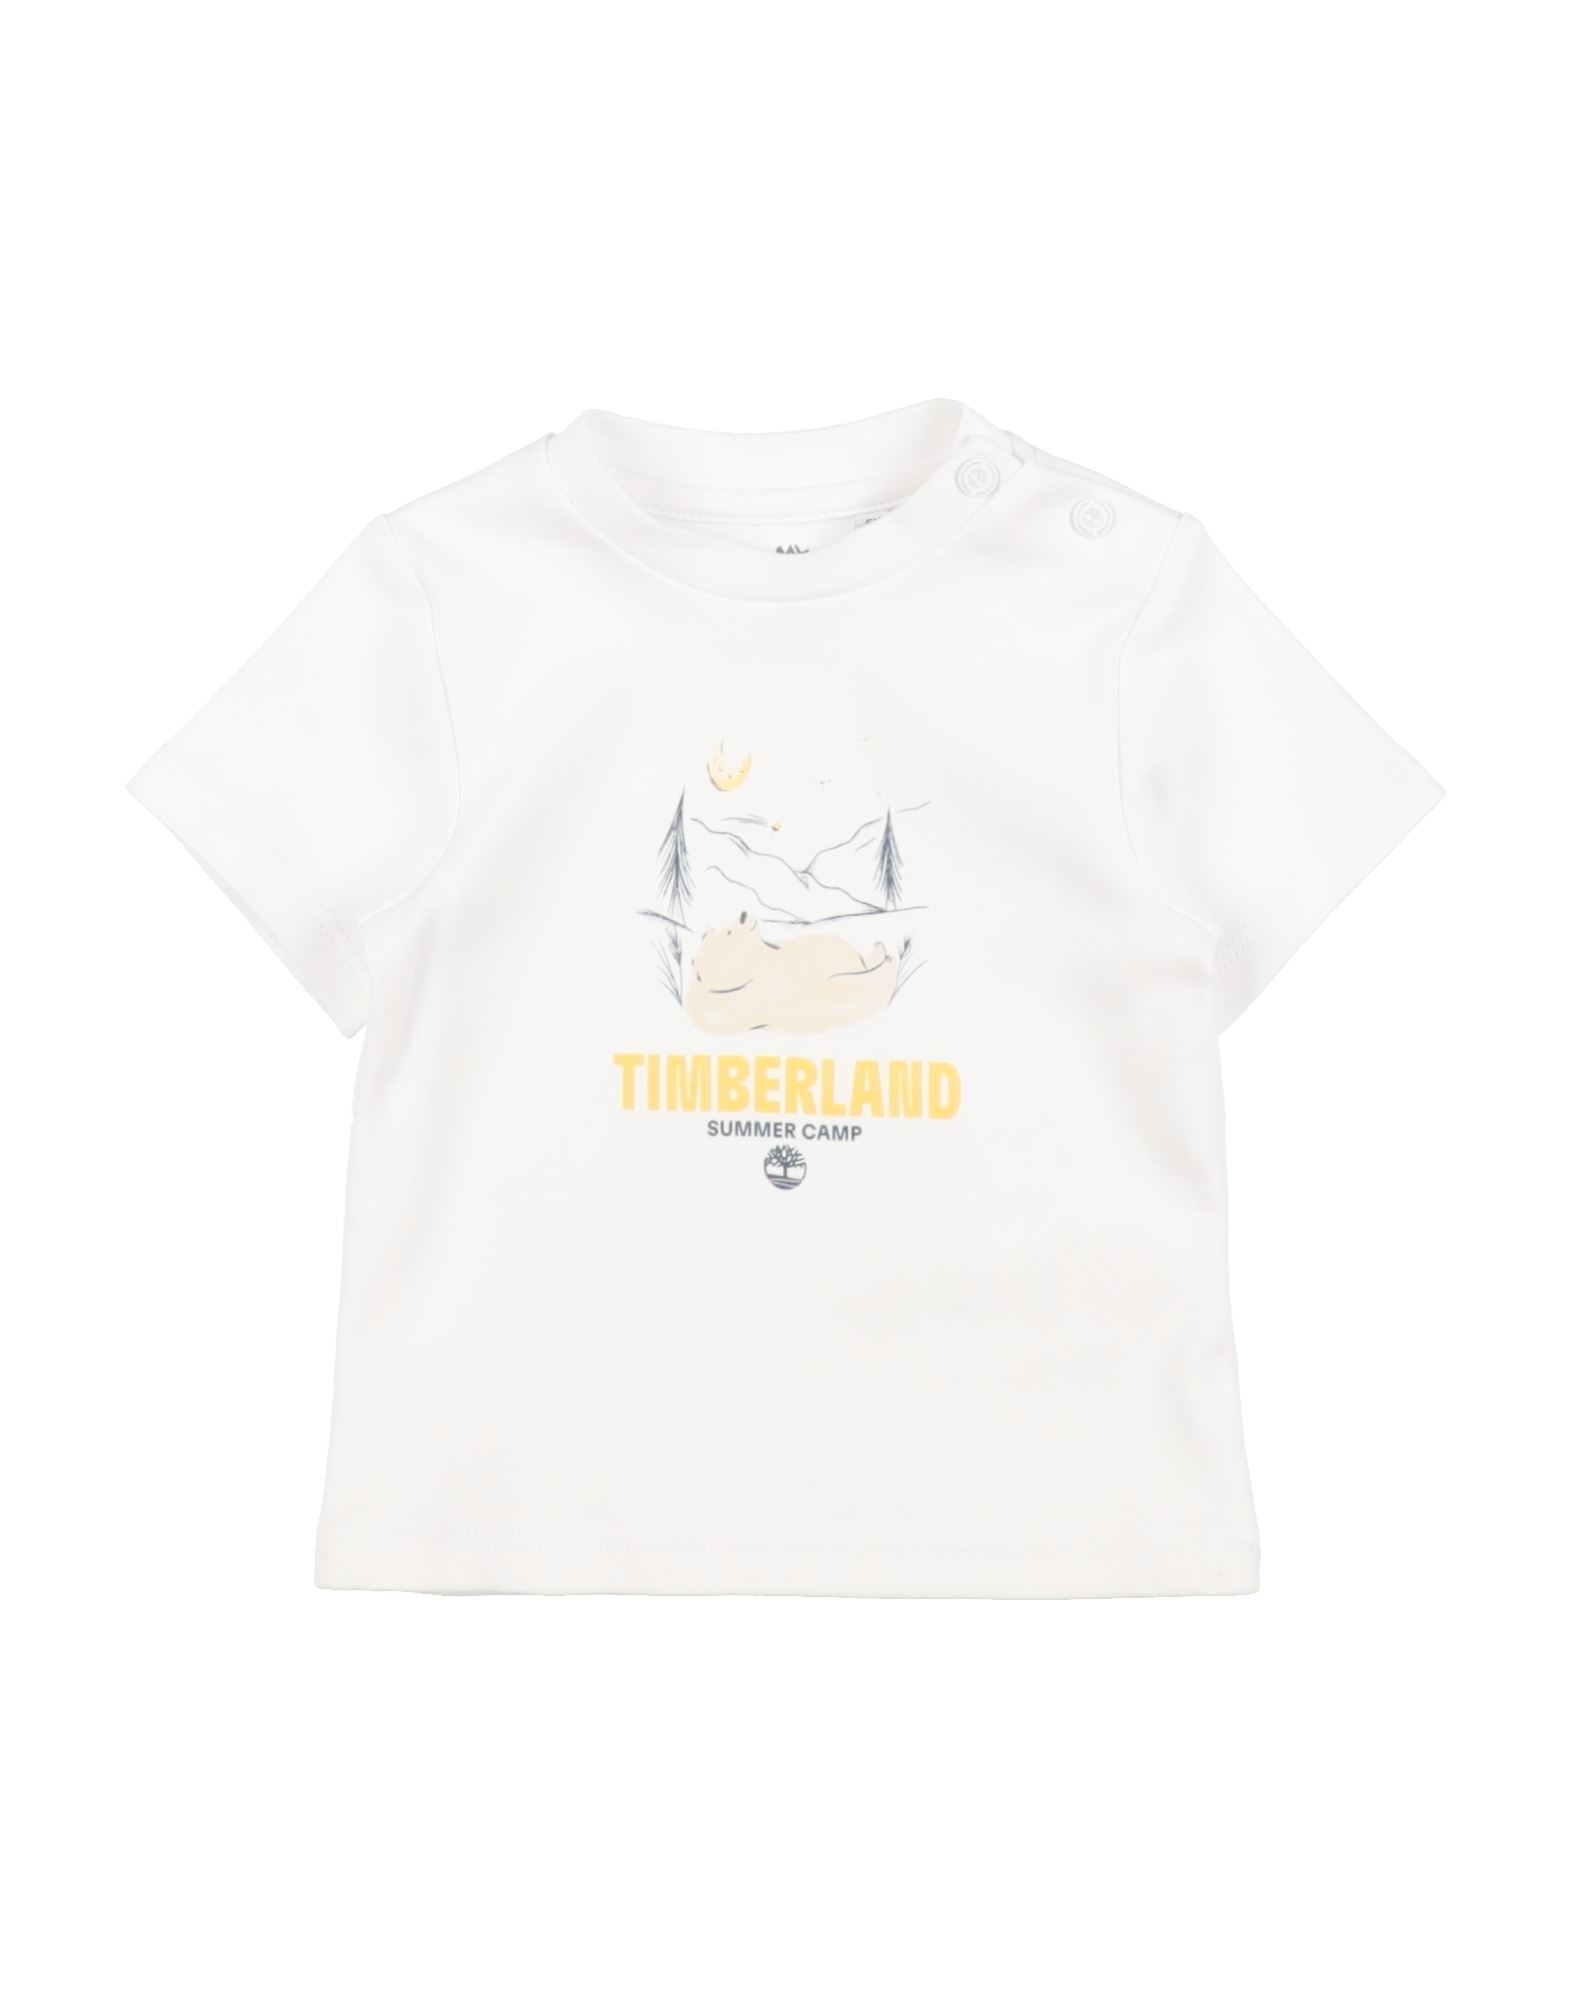 TIMBERLAND T-shirts Kinder Weiß von TIMBERLAND